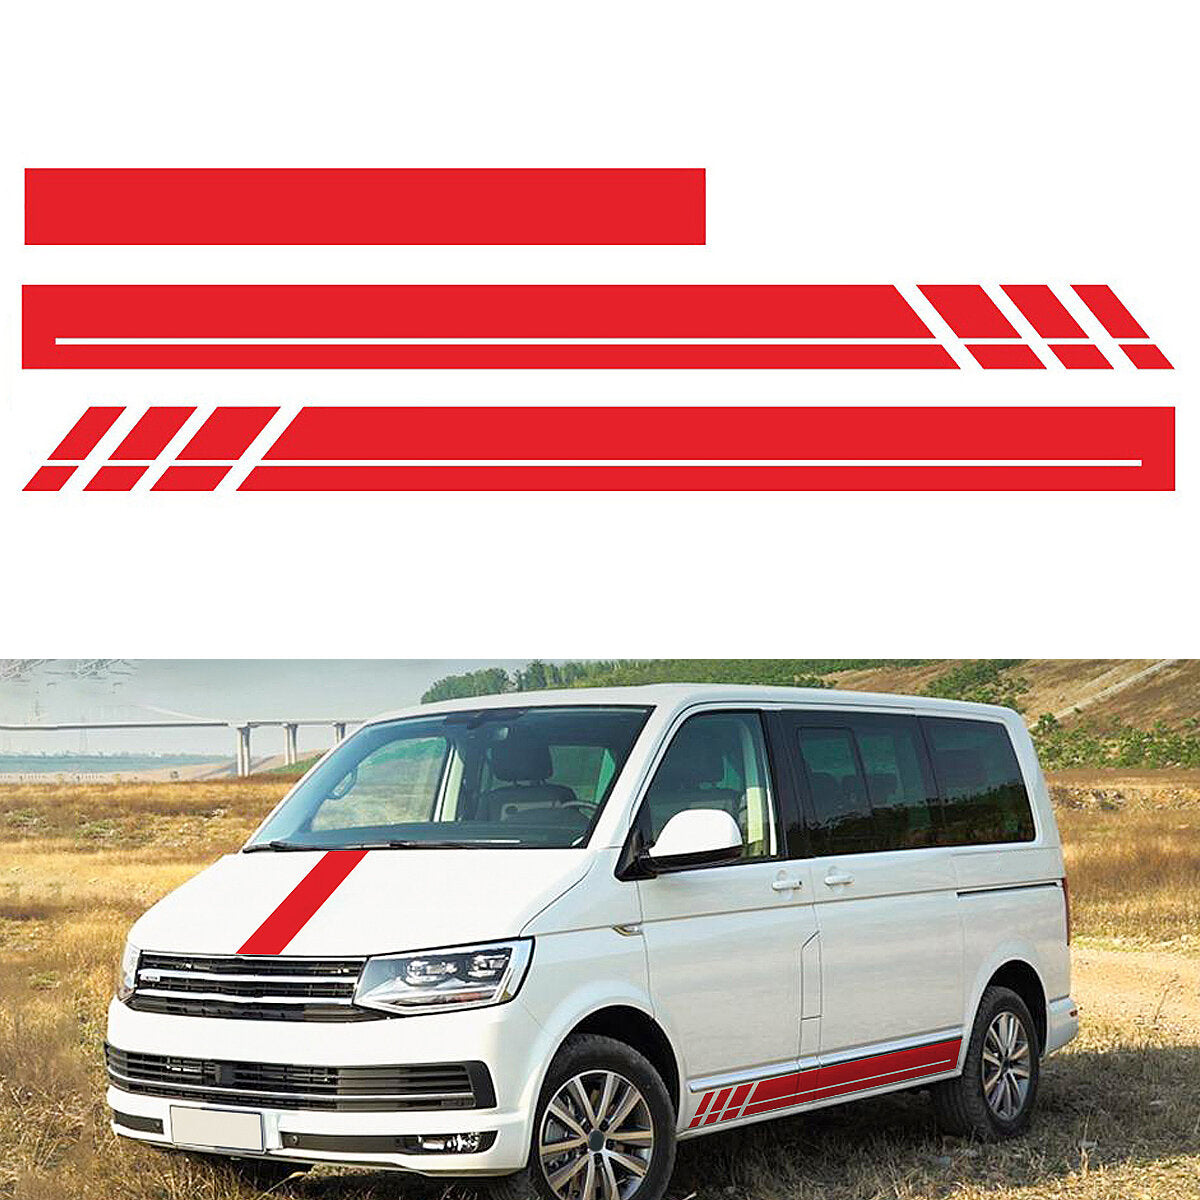 Car Stripes Hood Stickers Decals for VW Transporter Camper Van